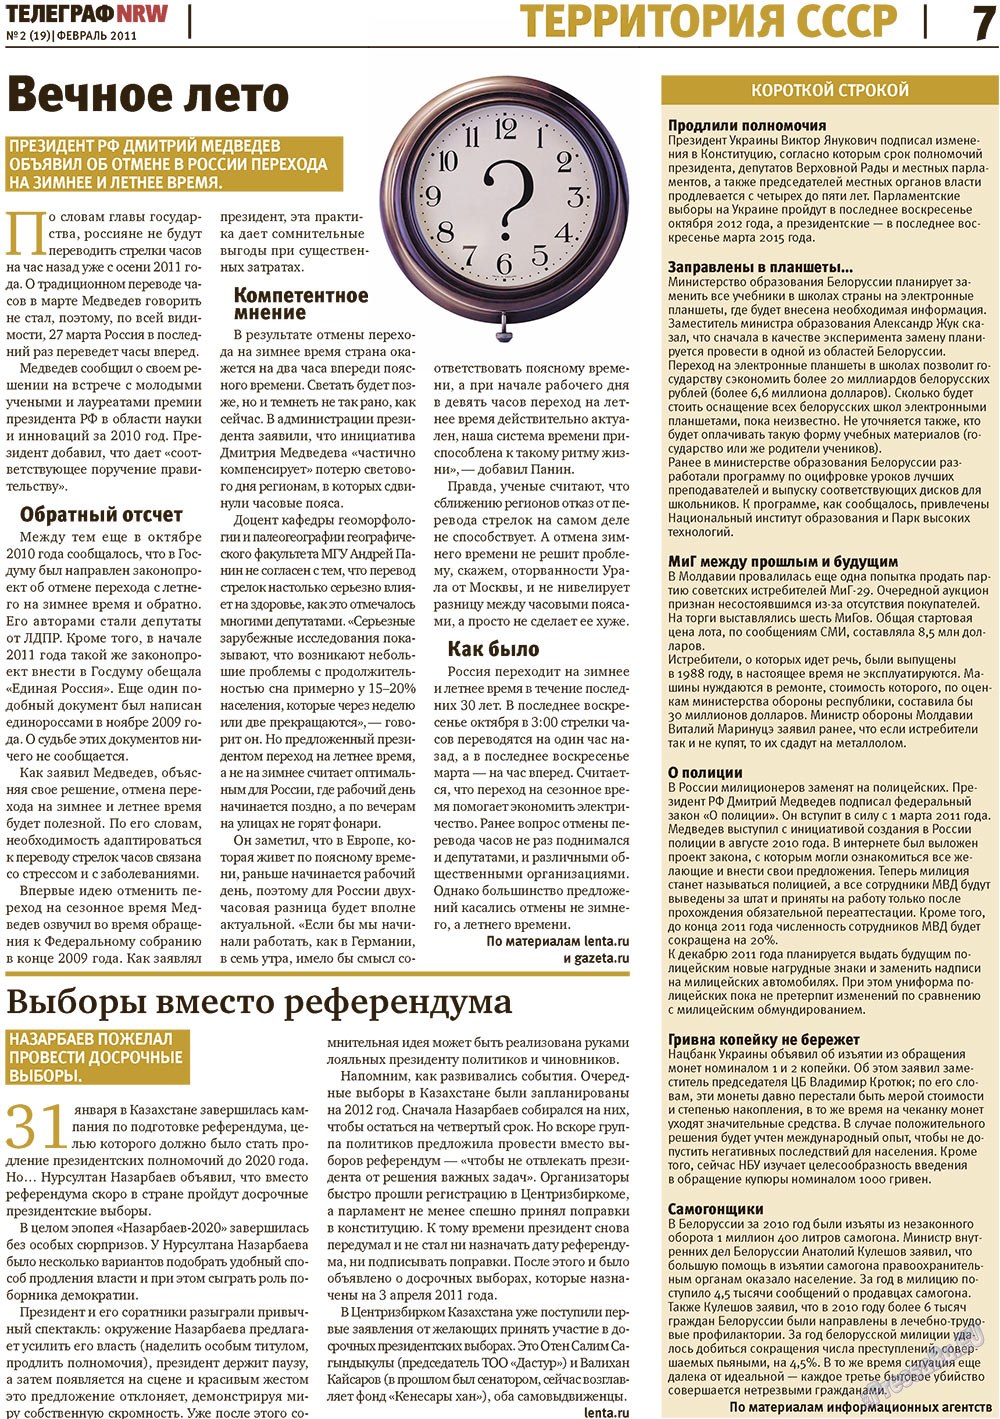 Телеграф NRW (газета). 2011 год, номер 2, стр. 7